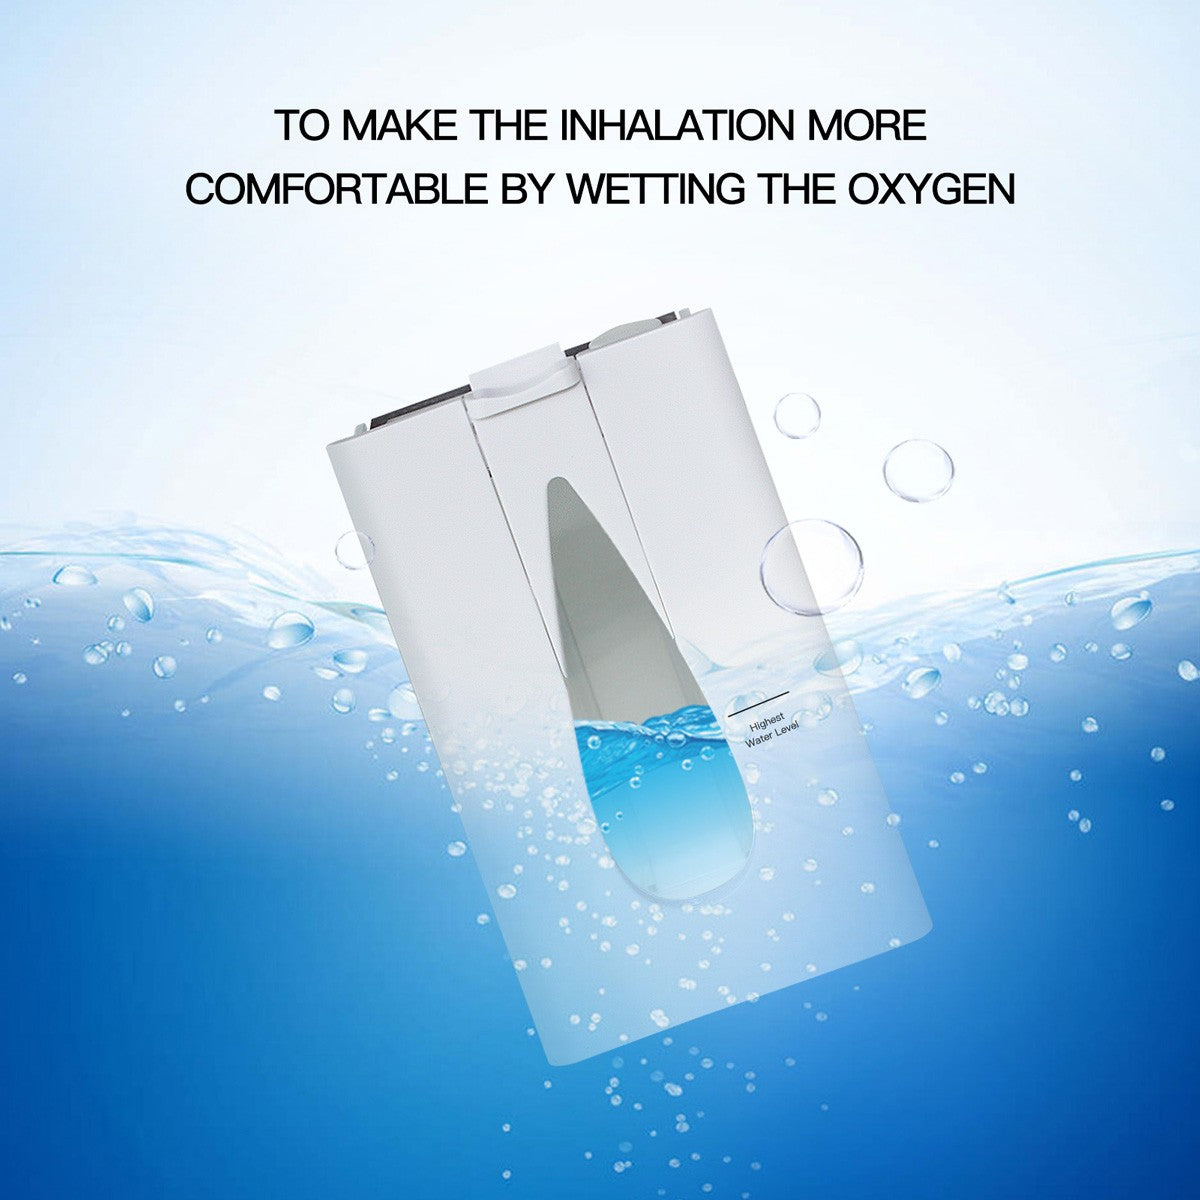 Comprar DEDAKJ Concentrador de oxígeno de flujo continuo de 7 litros DE-1A 1B ddt Máquina generadora de oxígeno portátil para oxigenoterapia en el hogar